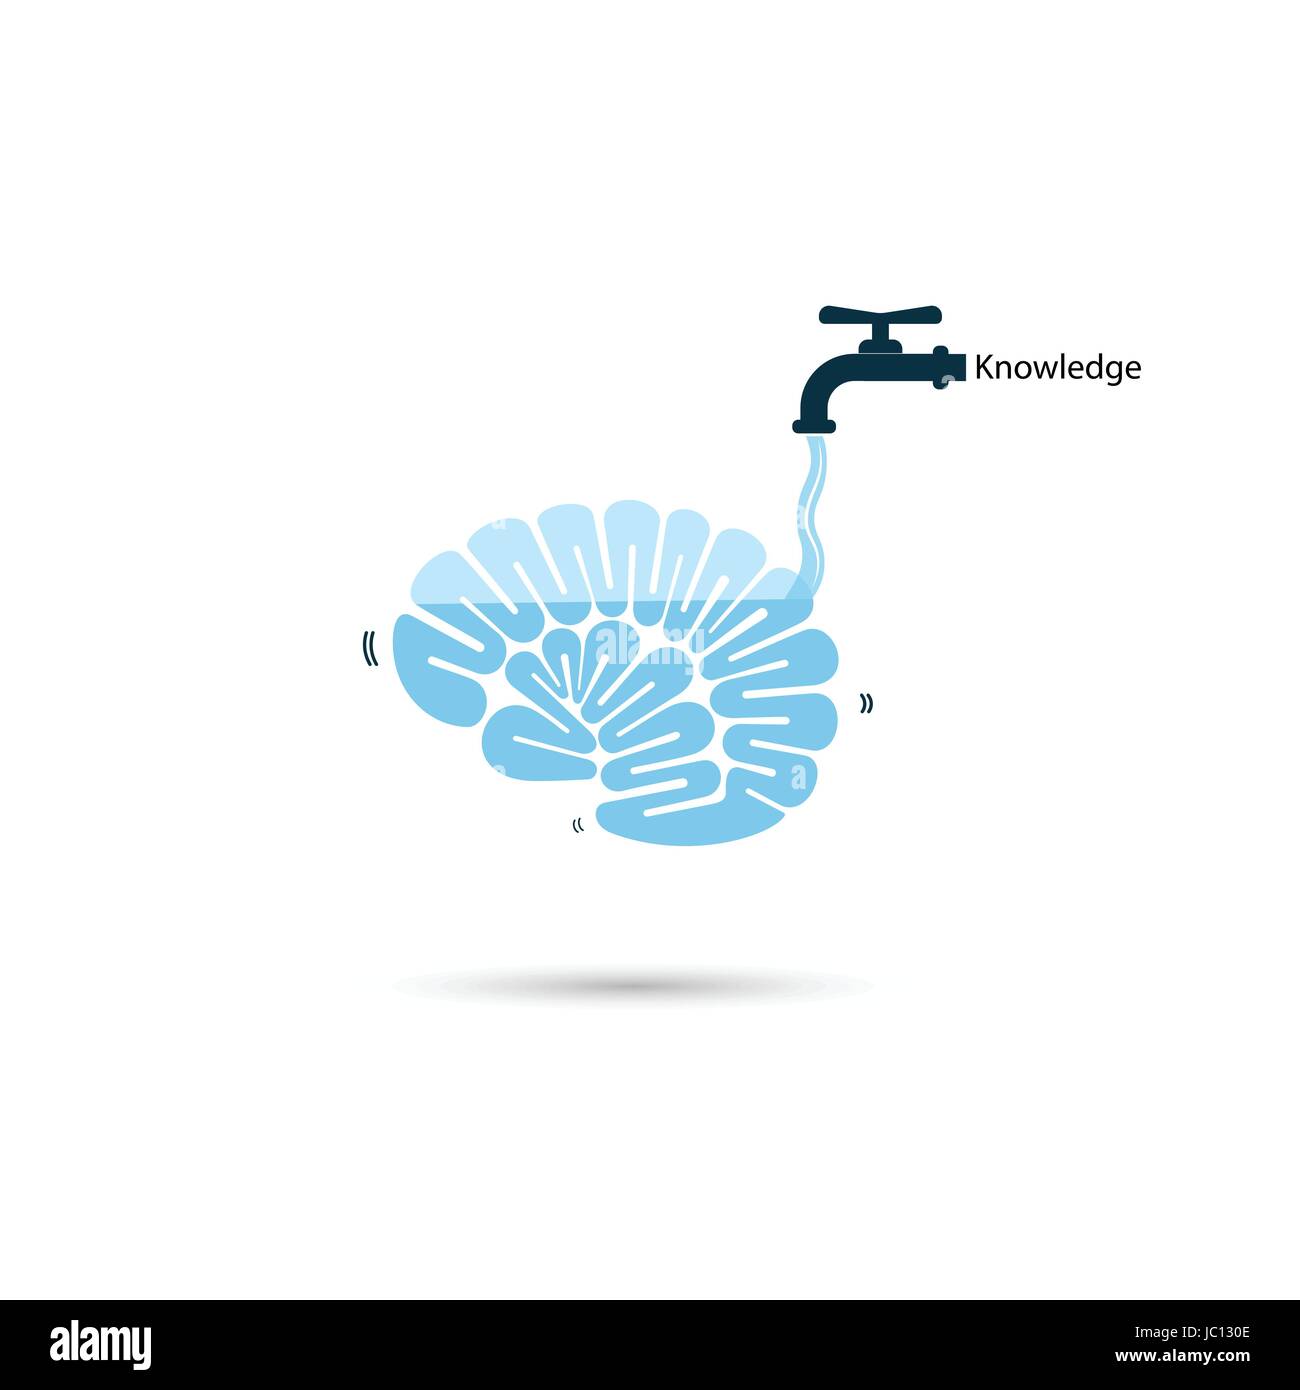 Gehirne Symbol und Leitungswasser Symbol mit Wissen füllen Konzept. Denken Gehirn und das schnelle Erlernen Konzept. Vector Illustration. Stock Vektor